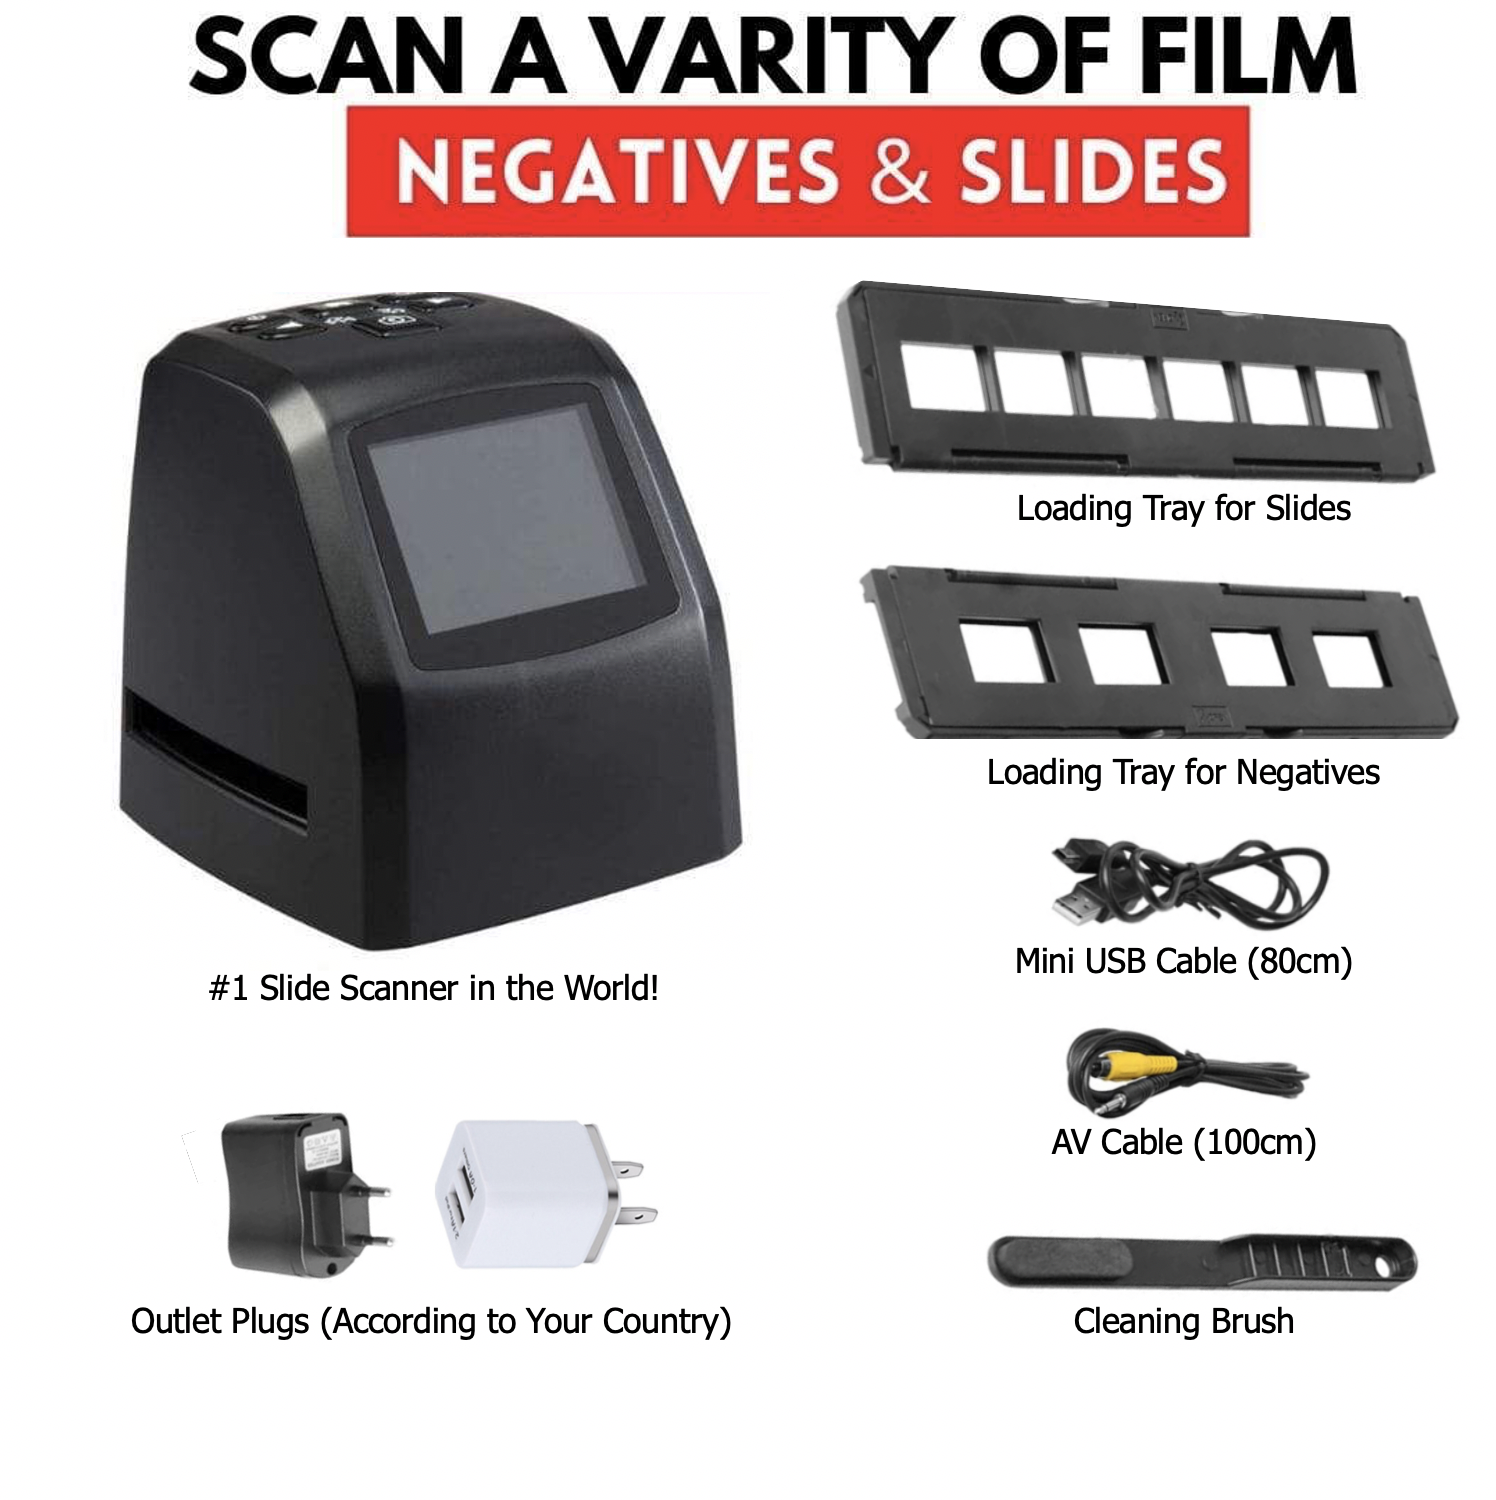 All-in-1 Film & Slide Scanner